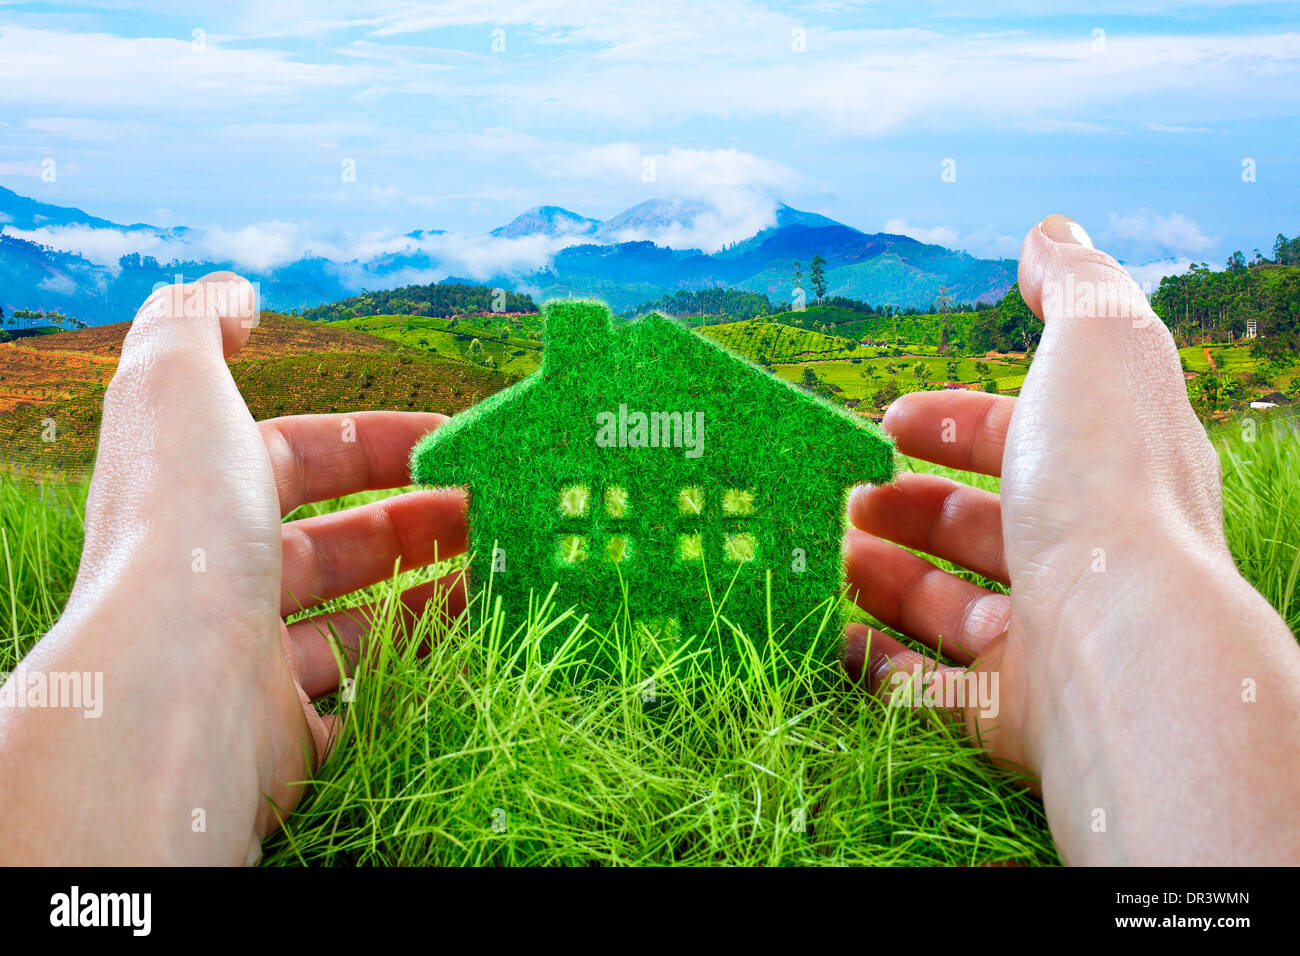 Eco House in Green grass protégés par la main d'homme sur fond de ciel bleu. Banque D'Images